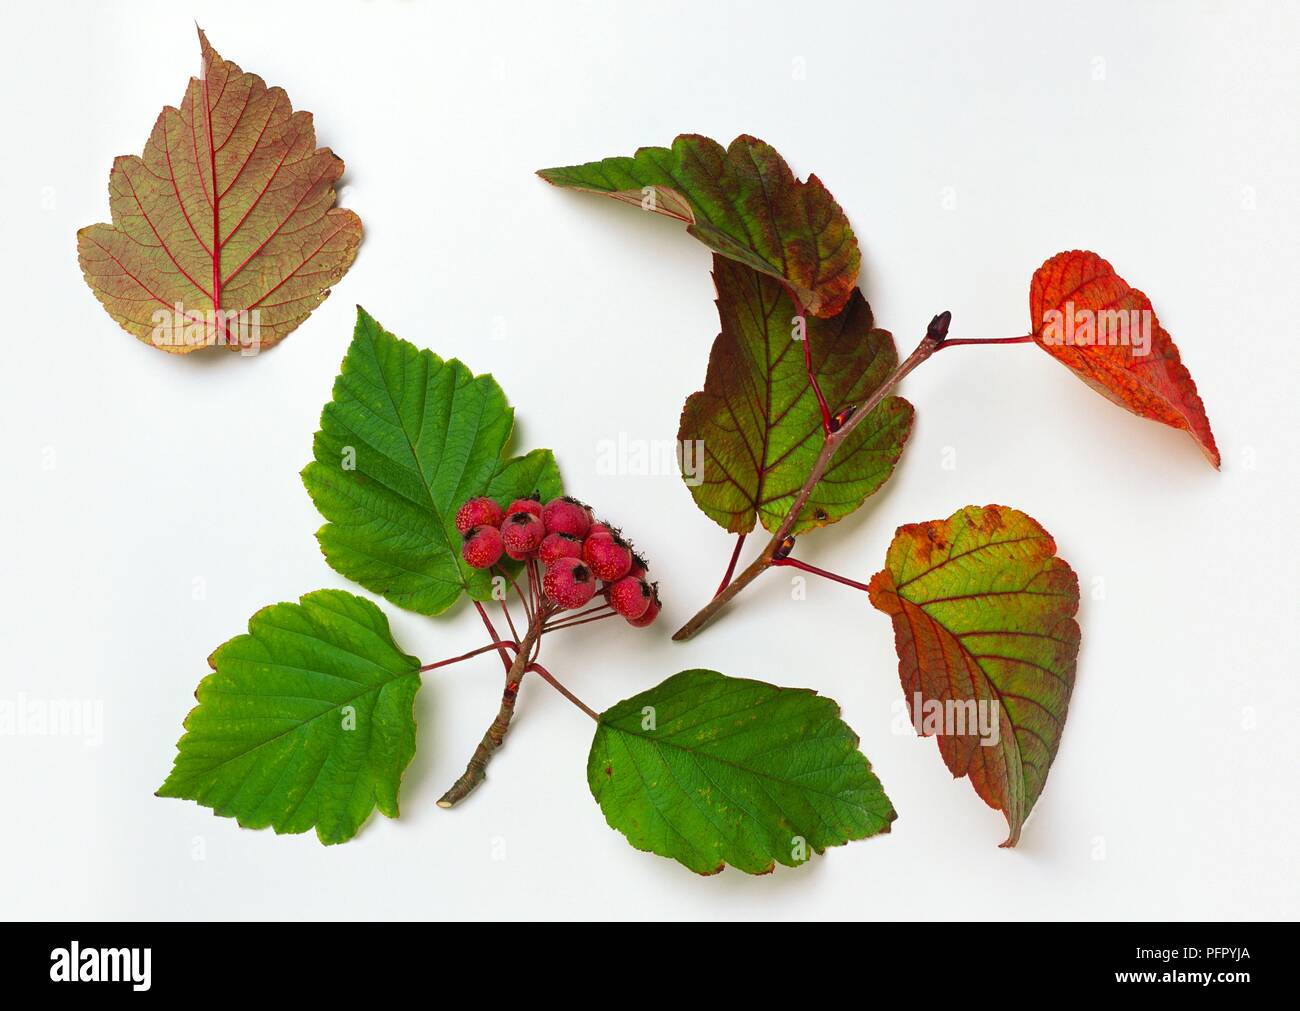 Malus yunnanensis (Yunnanensis Crabapple) Stecklinge mit roter Beerenfrucht, grüne, rote Blätter im Herbst zeigen rote Blattadern Stockfoto